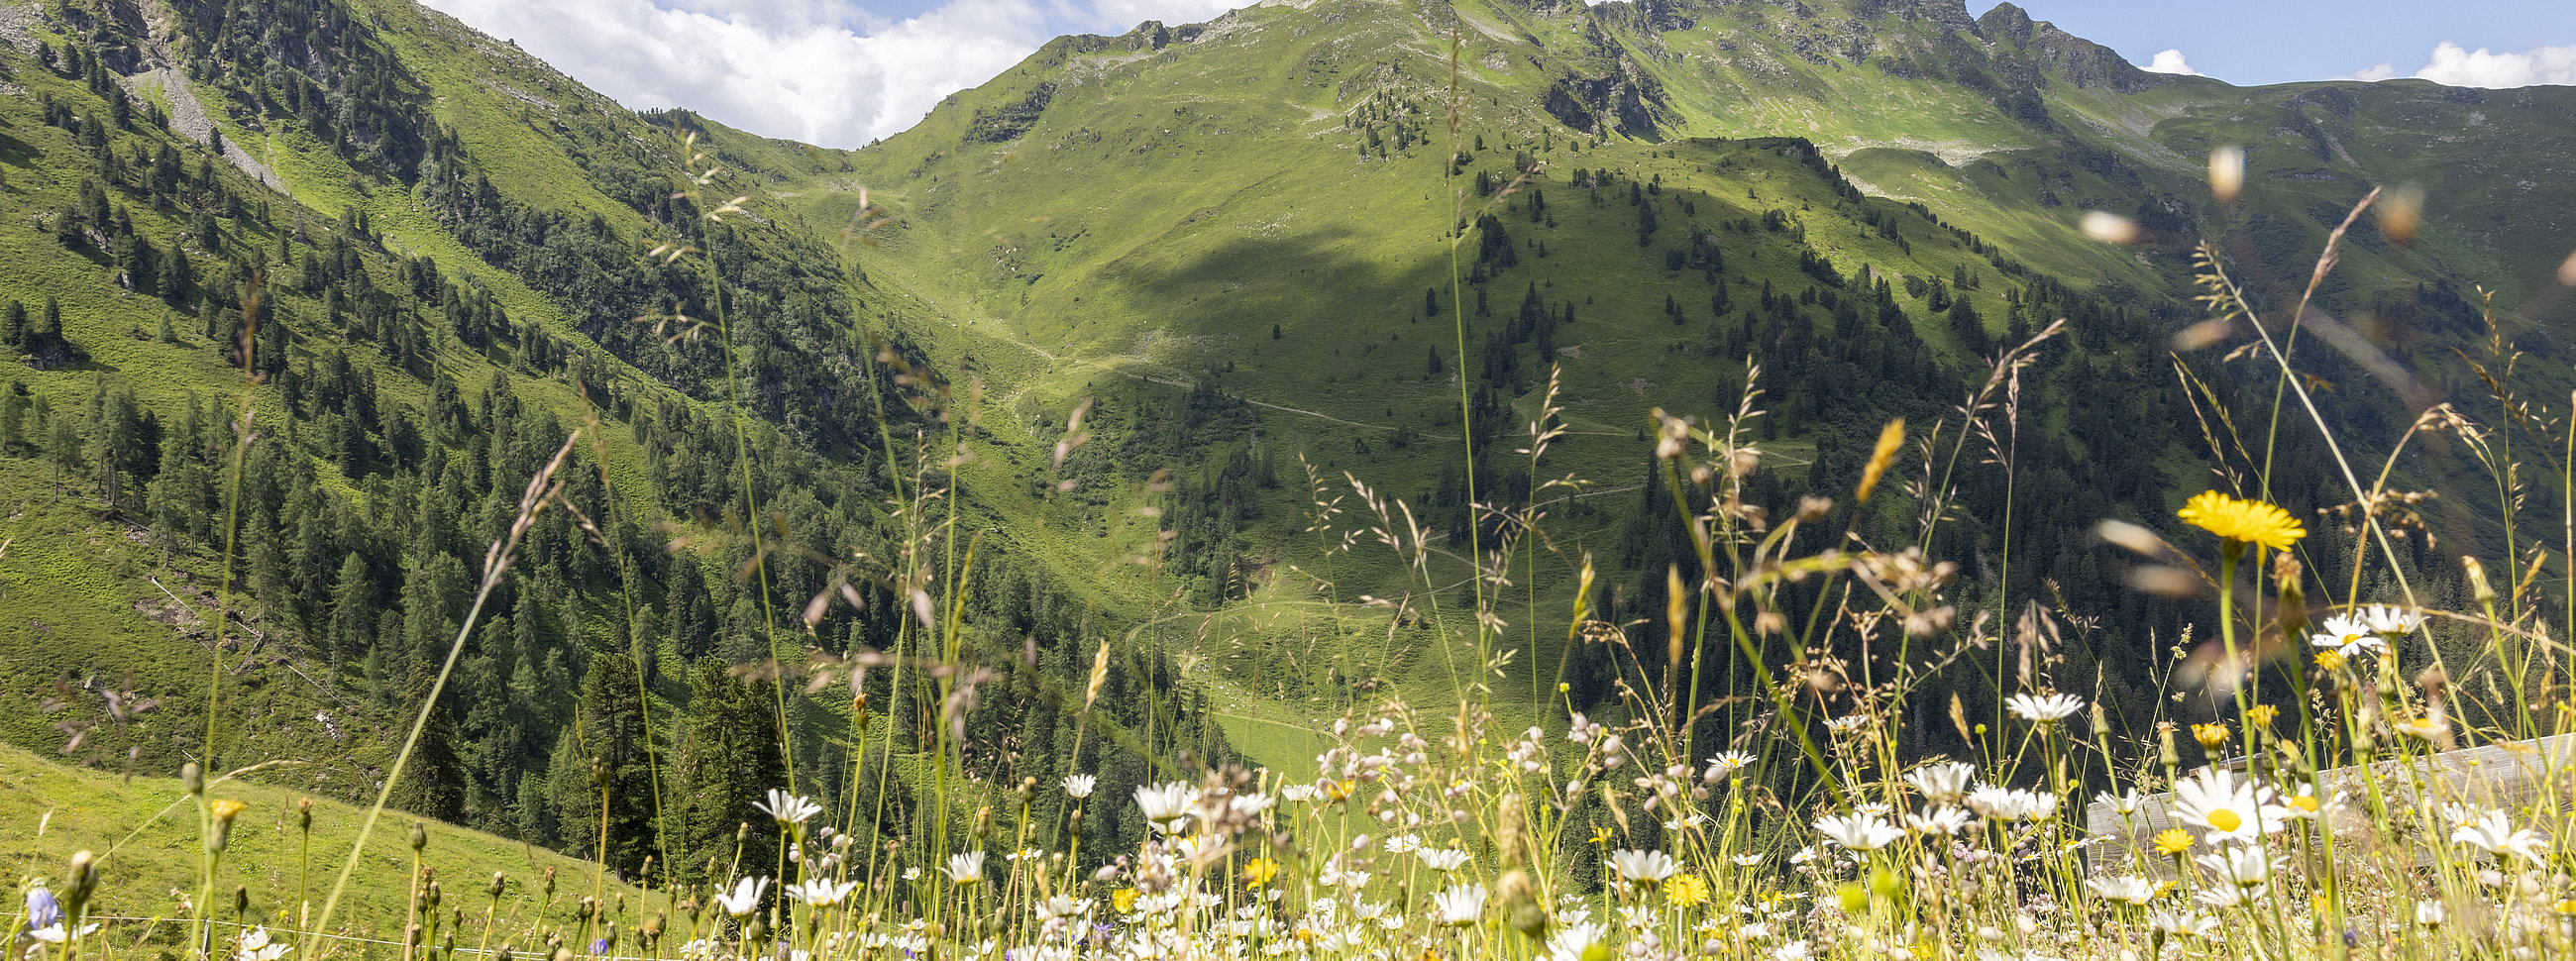 Blumenwiese mit Ausblick auf die Bergwelt